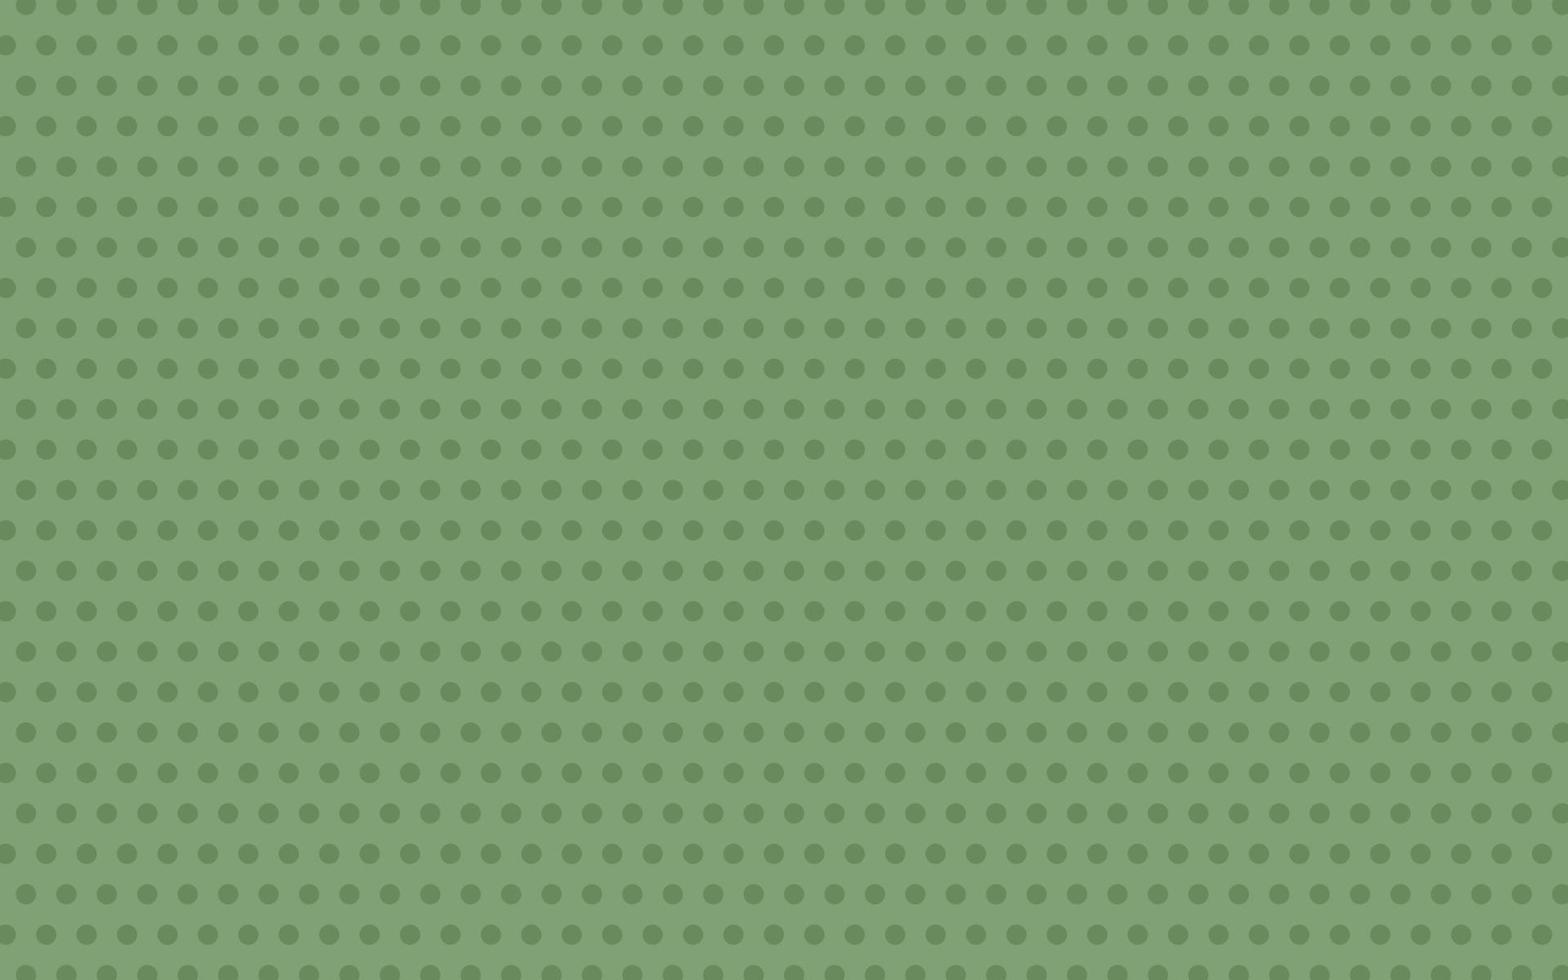 Polka Dots Kunst abstrakte grüne Landschaft breiter Hintergrund formt Symbol nahtlose Muster für Textildruck Bucheinbände etc vektor